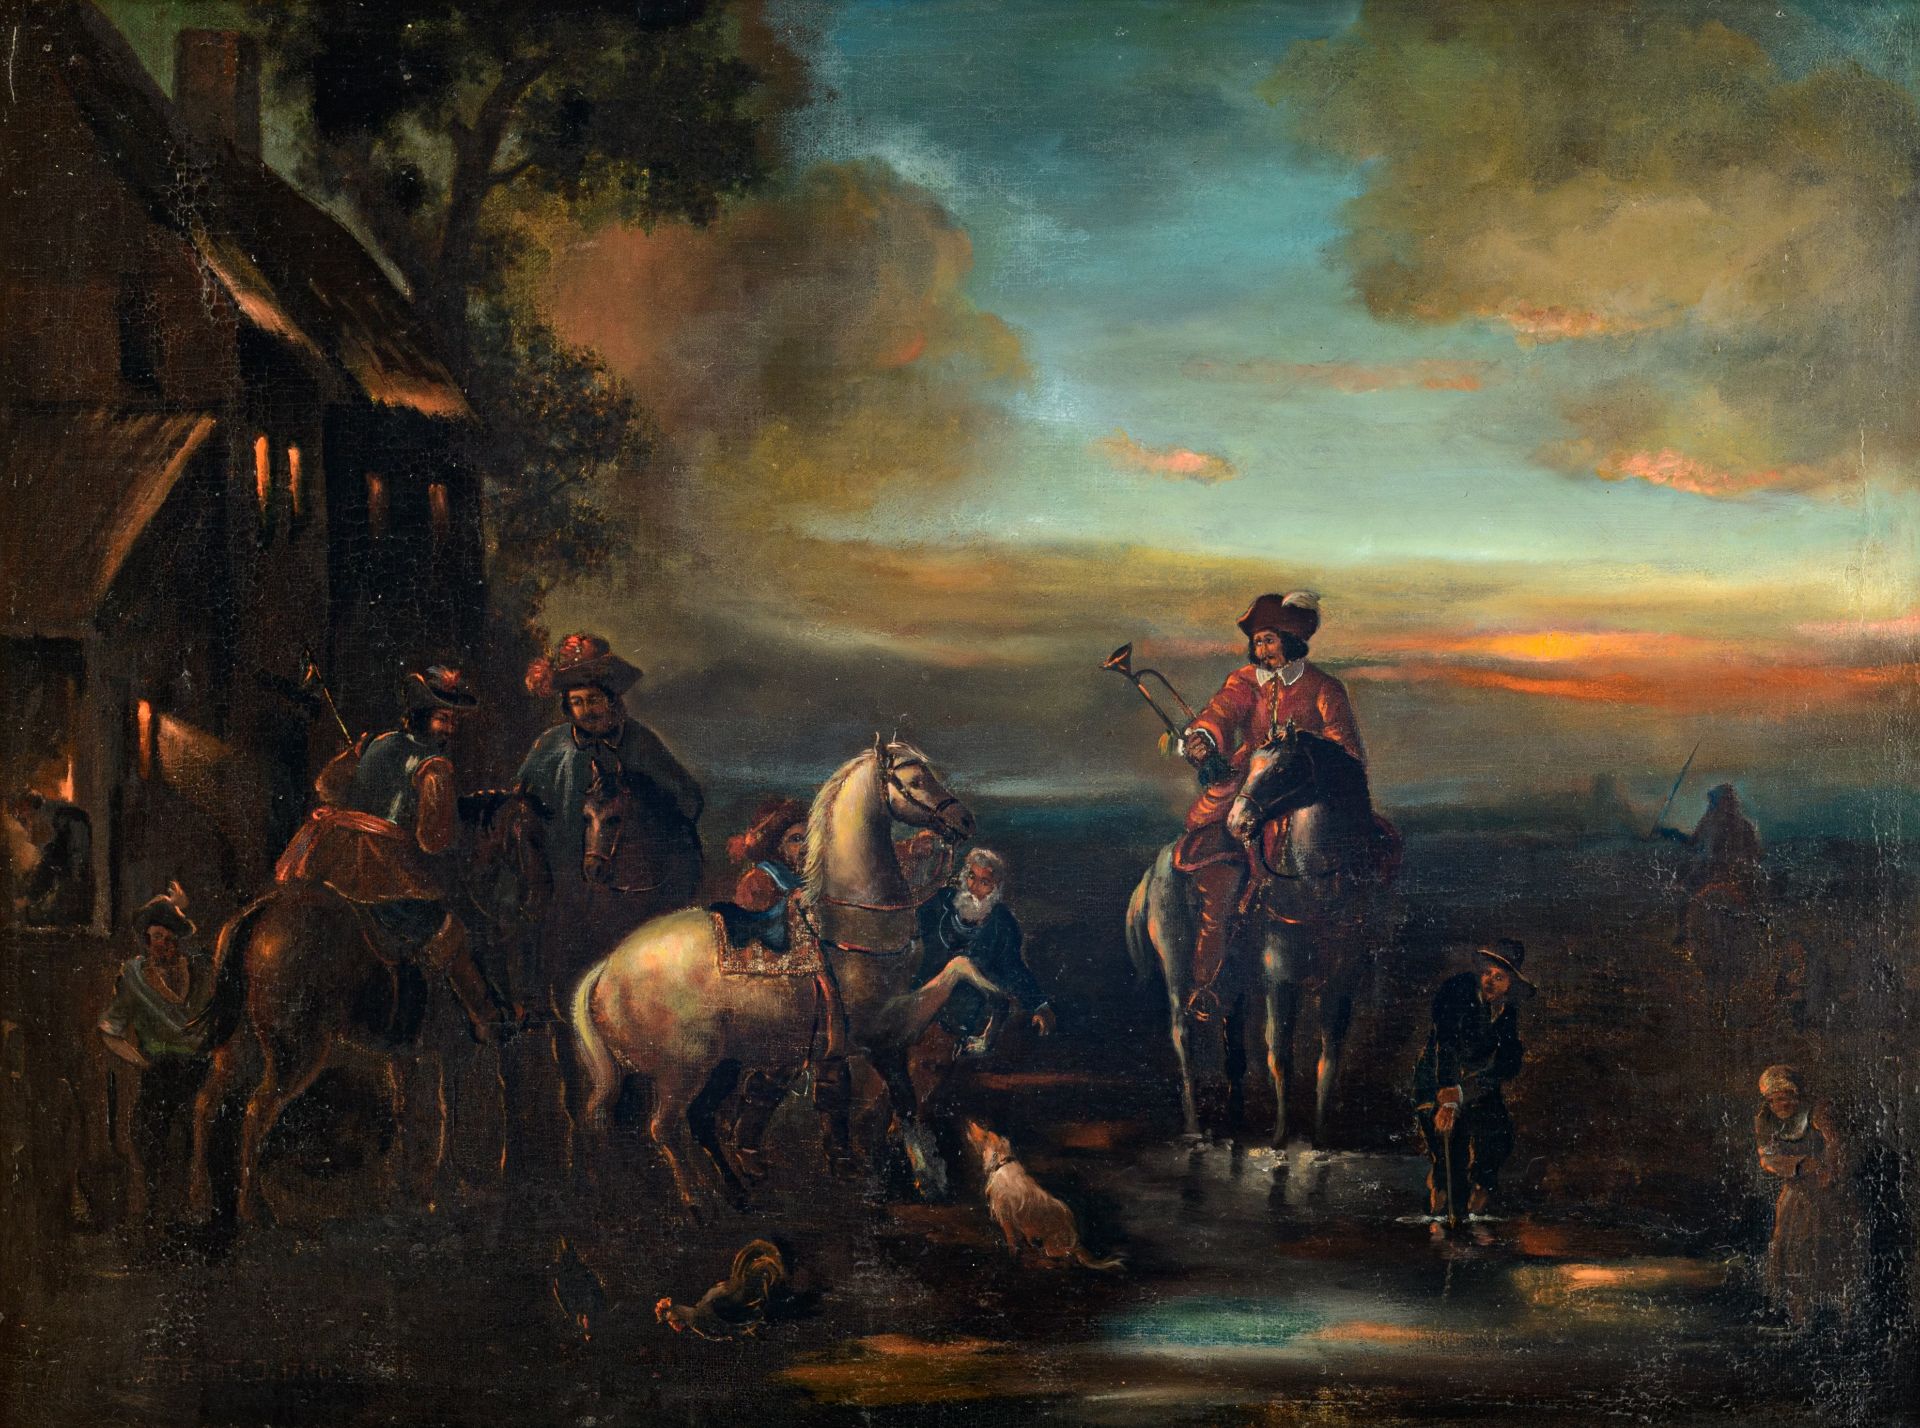 Jean Vasserot (?) (1769-?), travellers near the inn, dated 1780, 66,5 x 86,5 cm